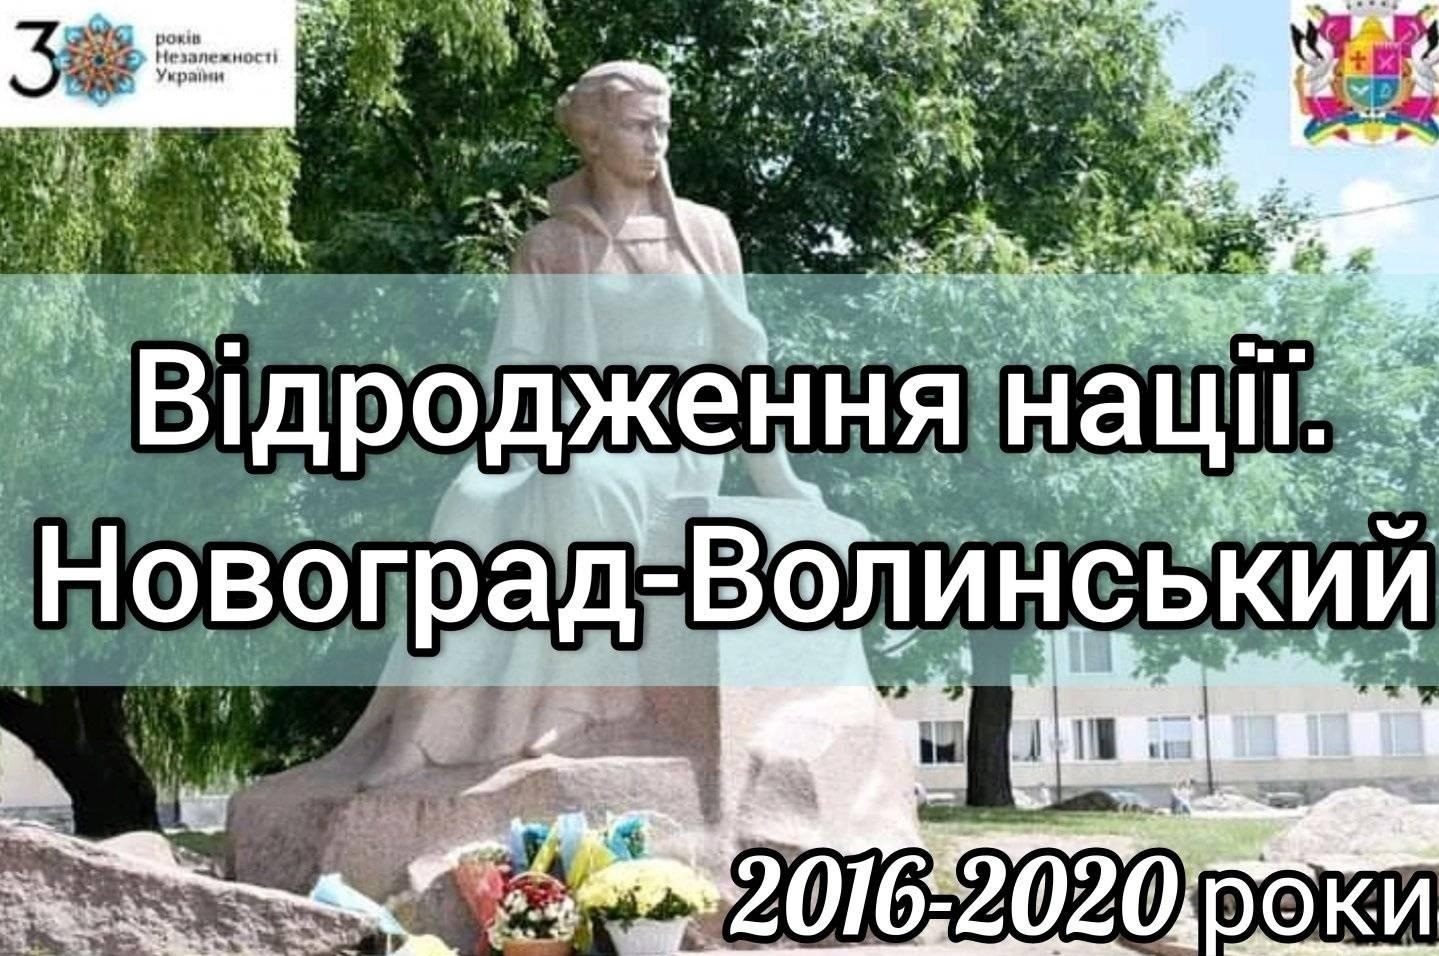 «Відродження нації. Новоград-Волинський» – 2016-2020 роки